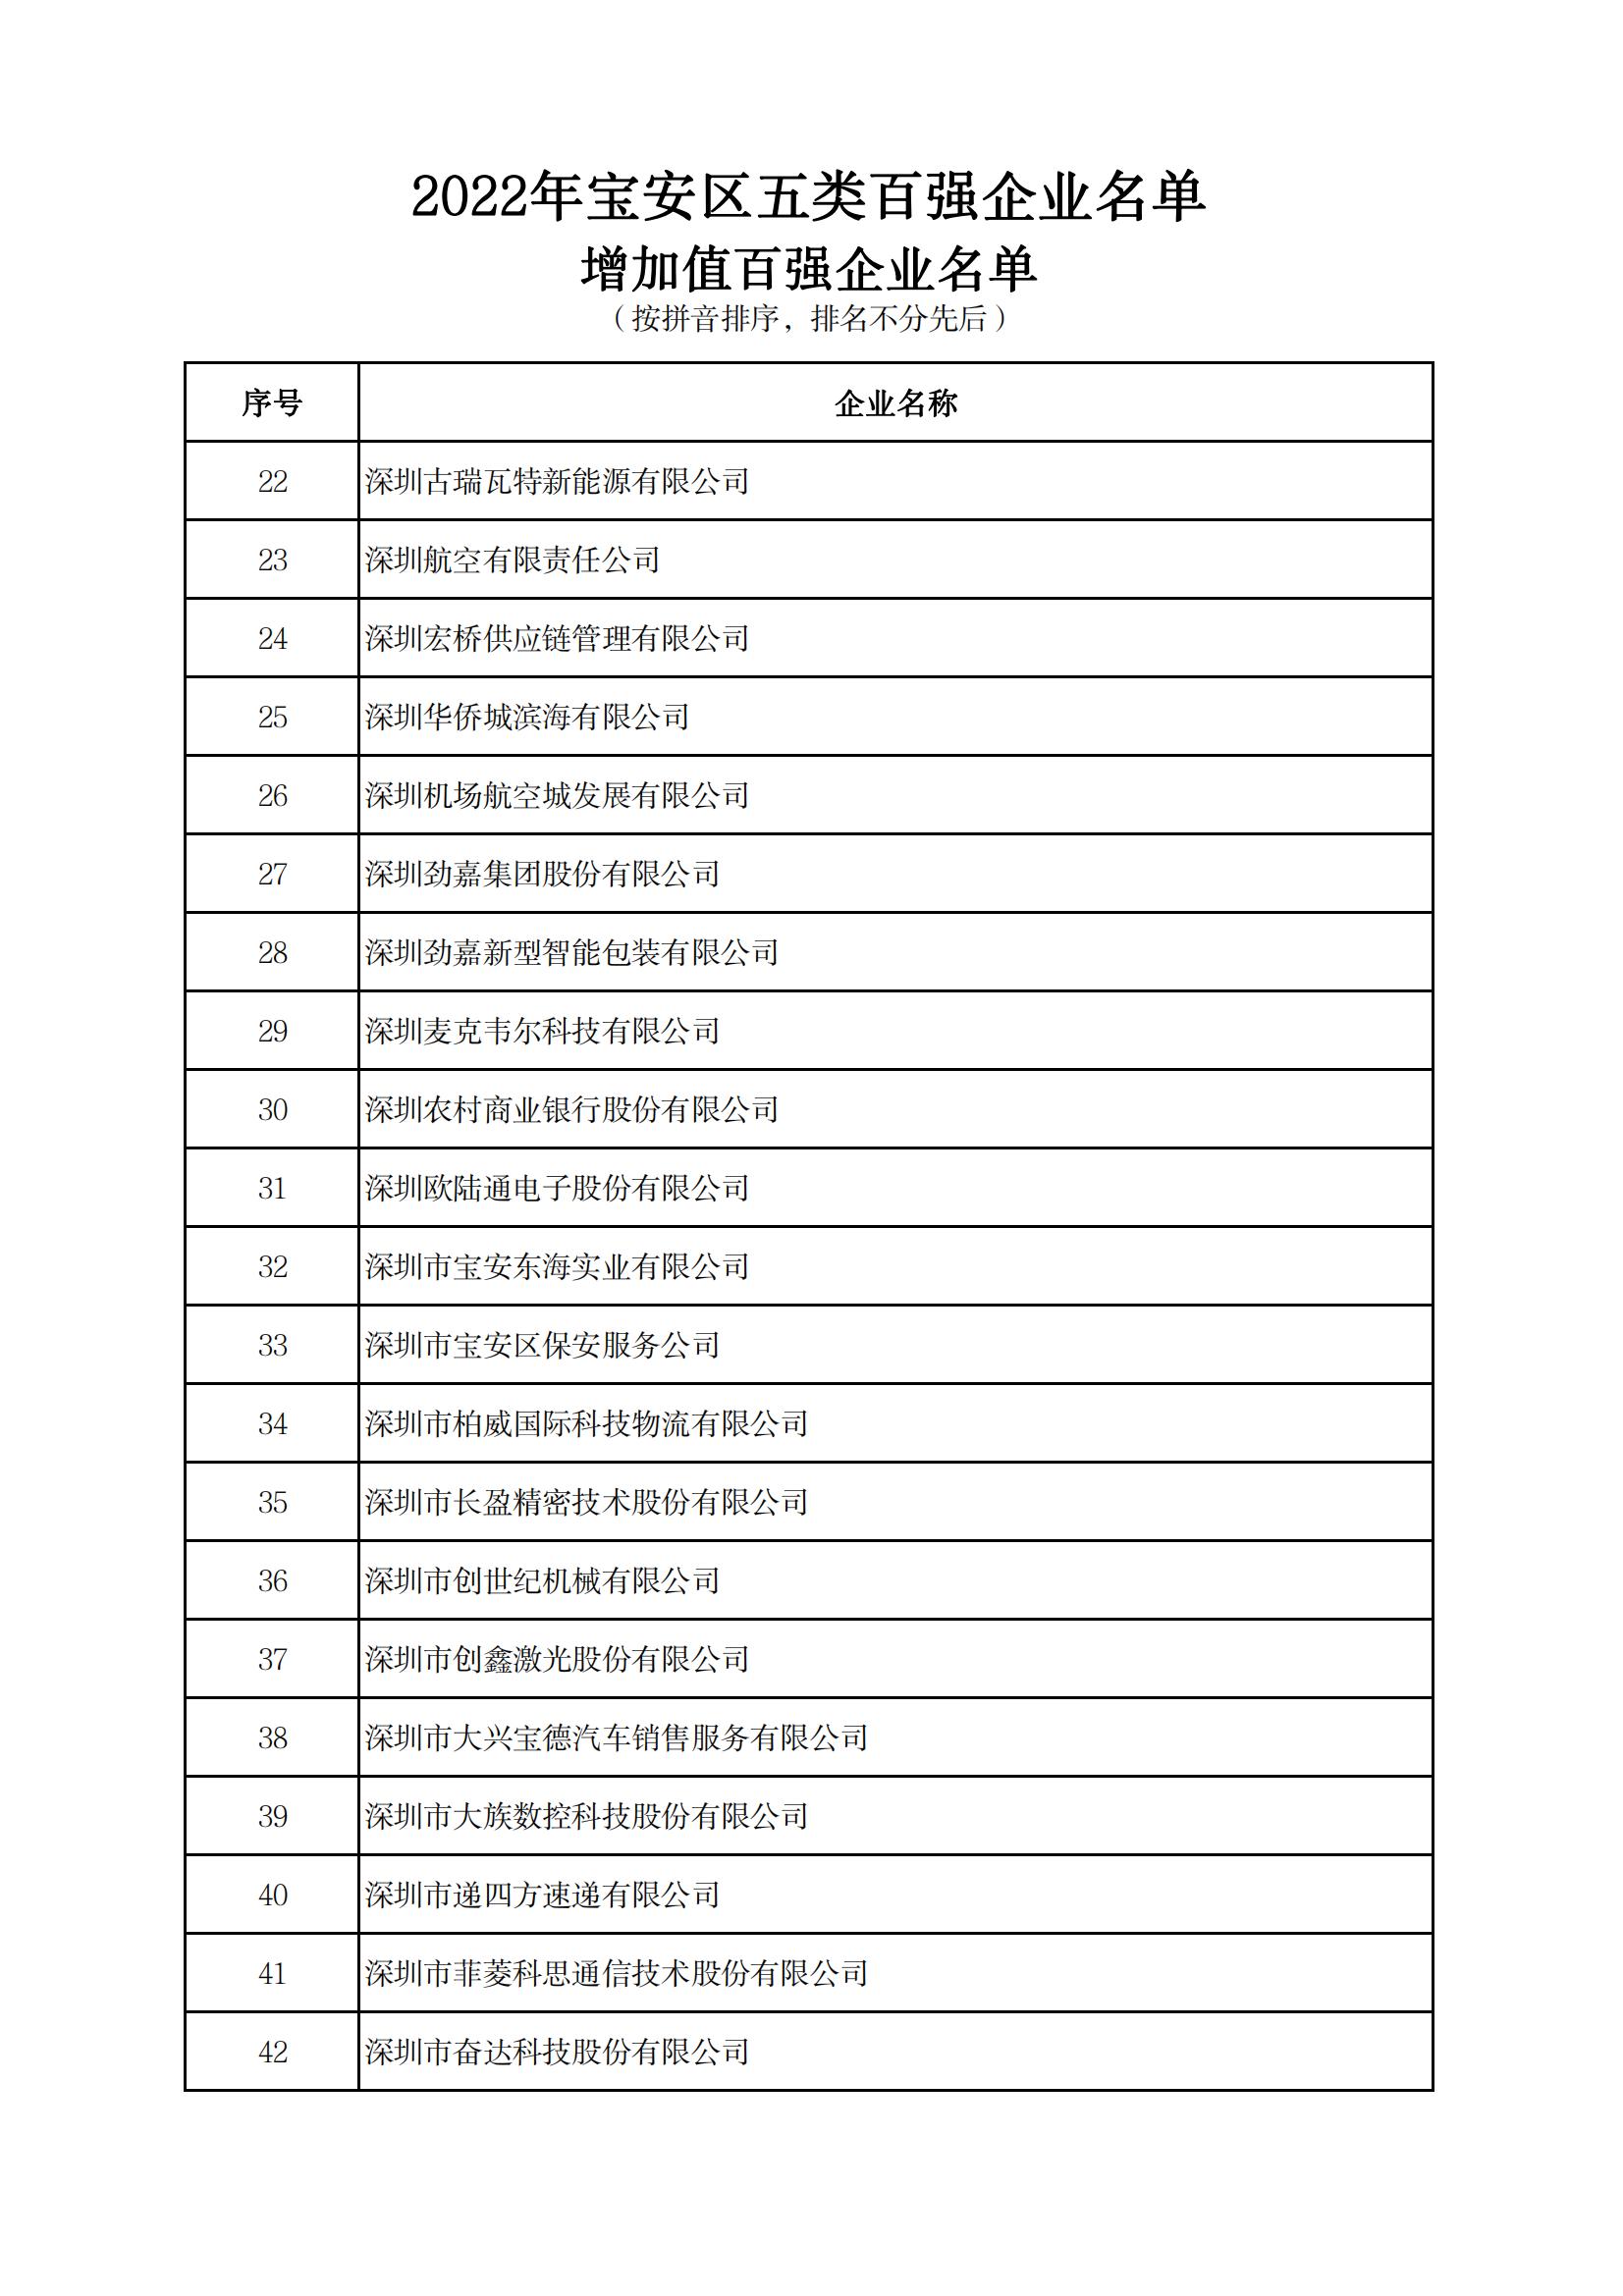 附件：2022年宝安区五类百强企业名单_06.jpg